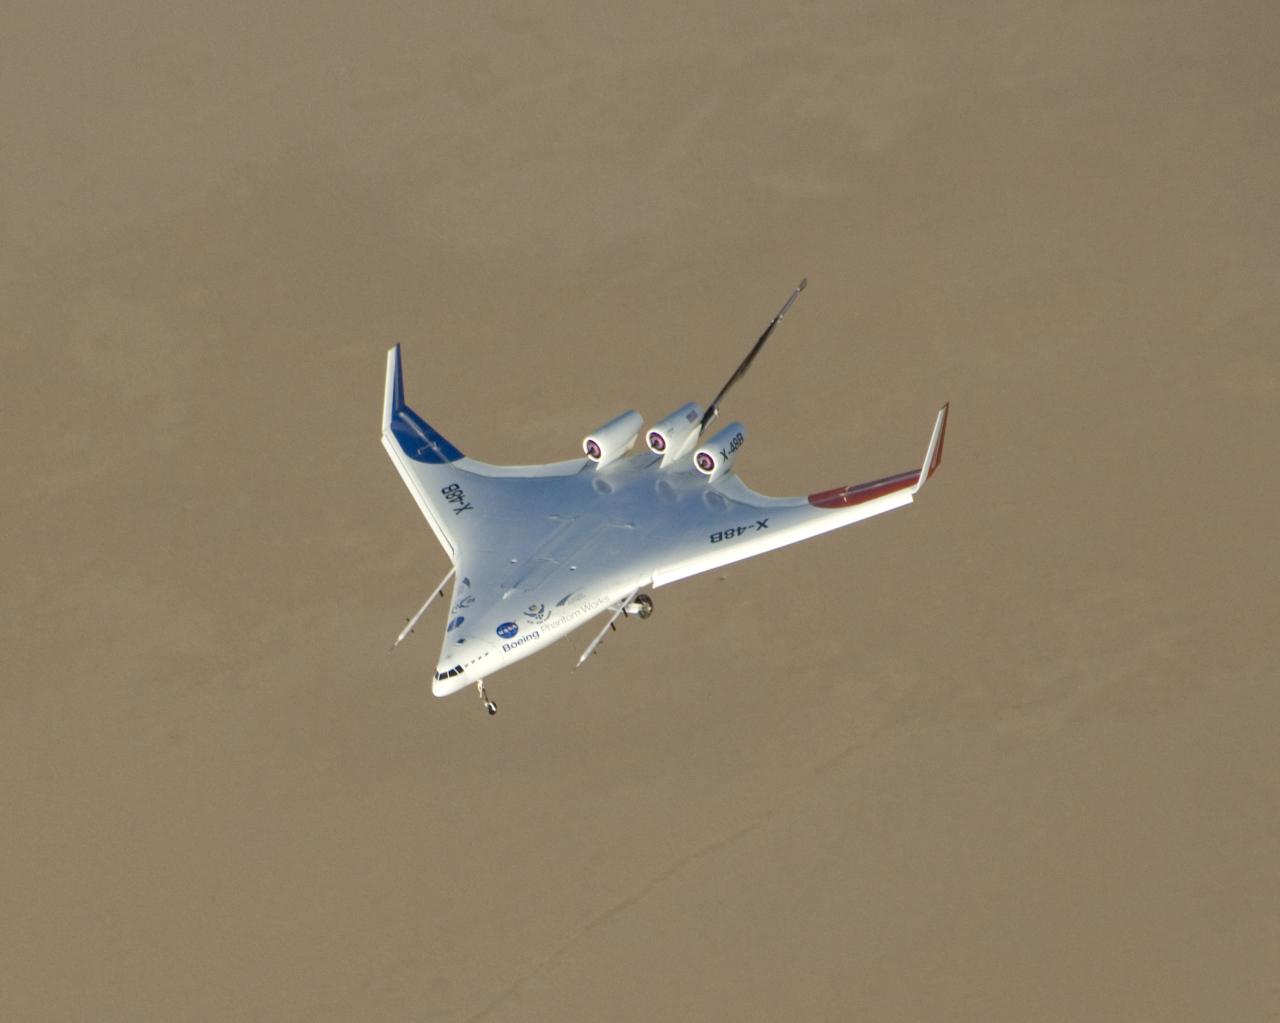 X-48B翼身融合體飛機